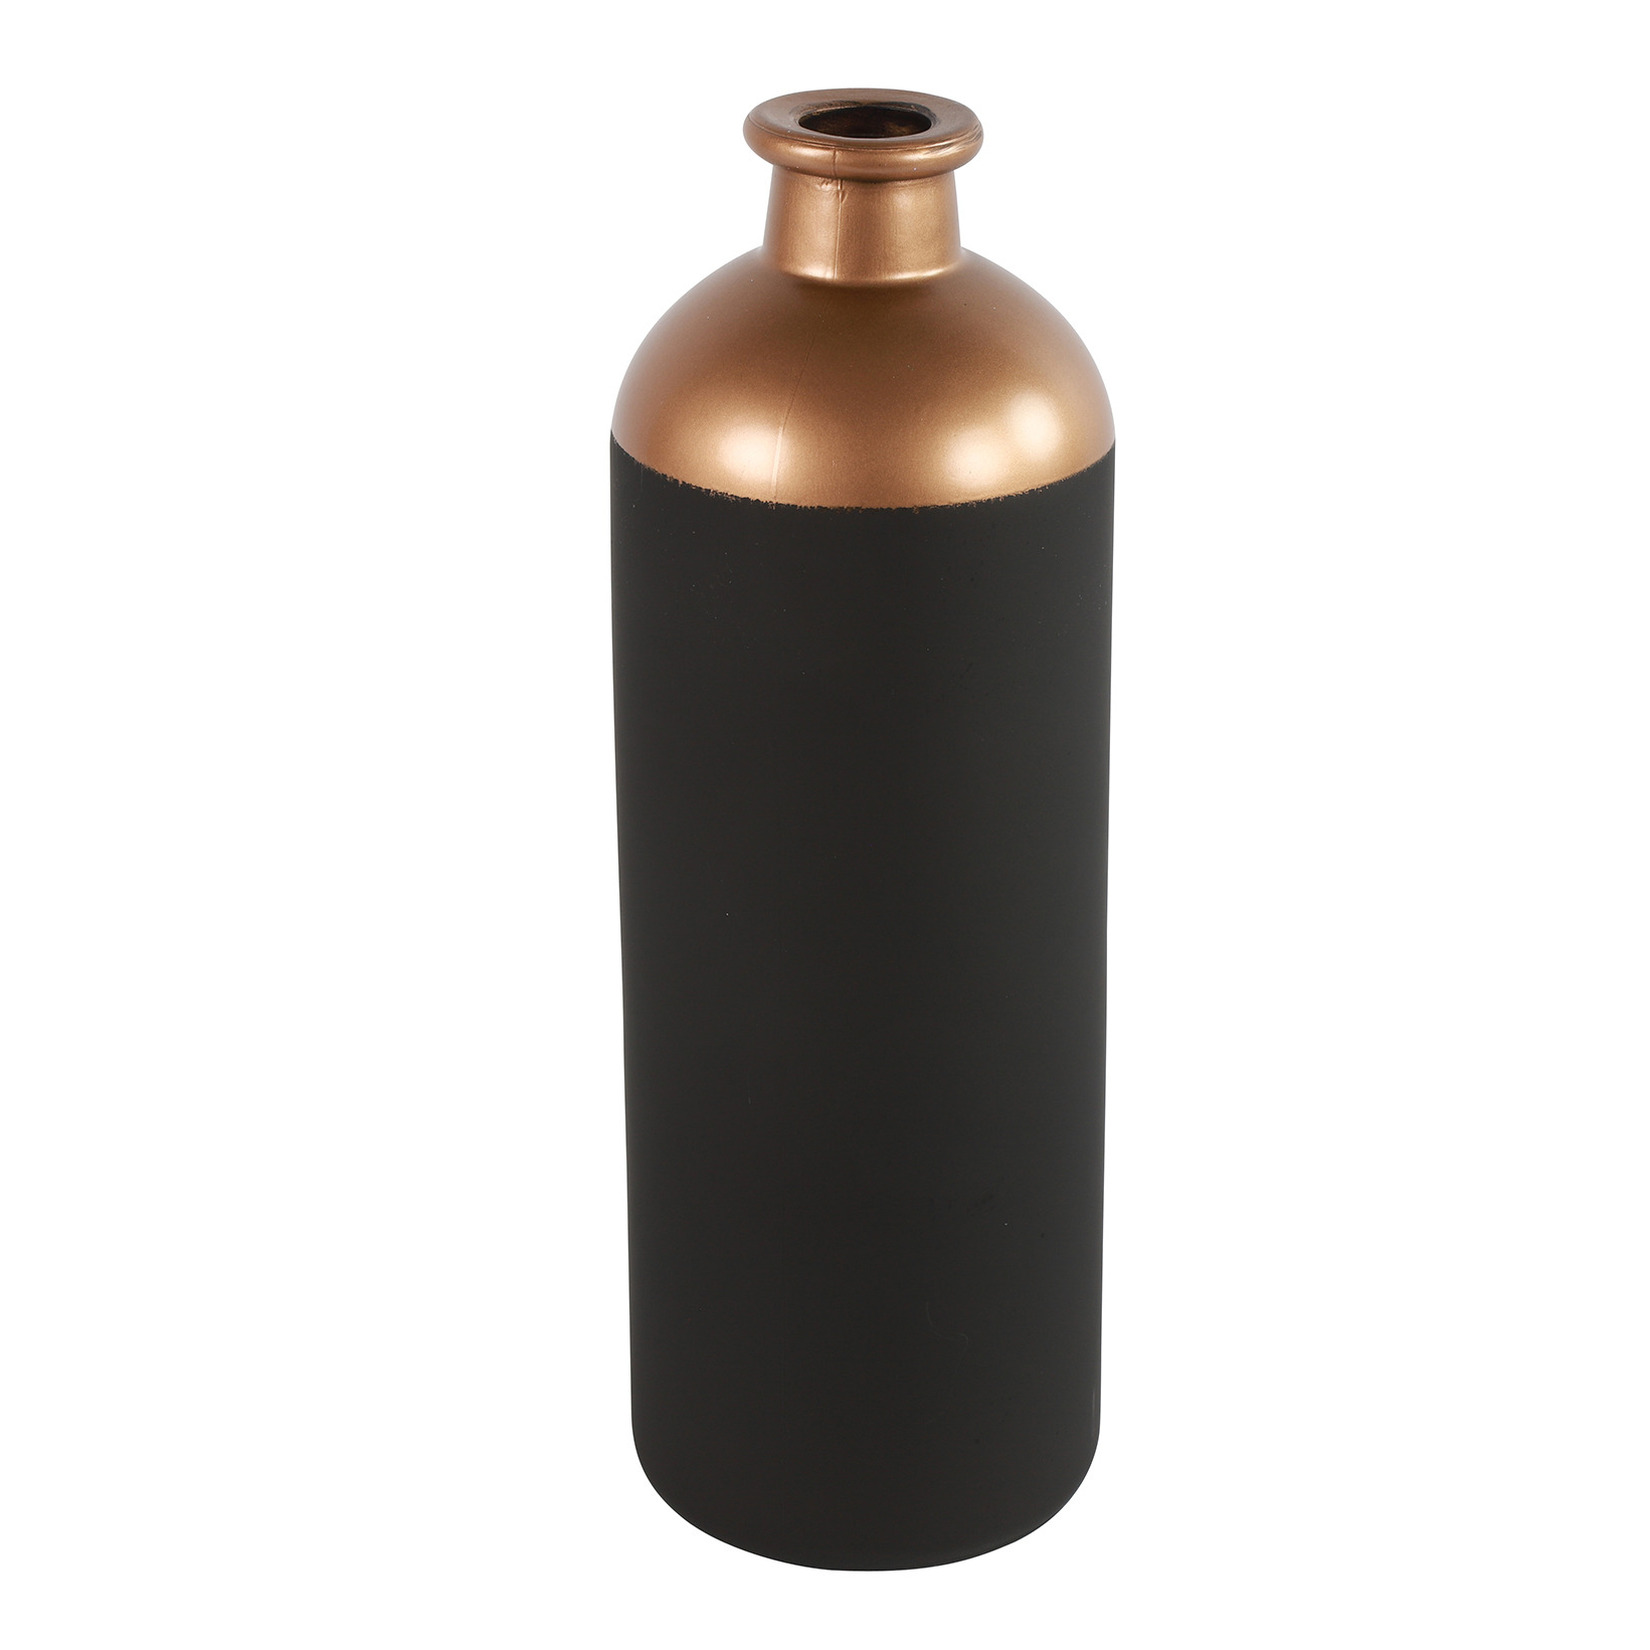 Countryfield Bloemen-deco vaas zwart-koper glas fles D11 x H33 cm